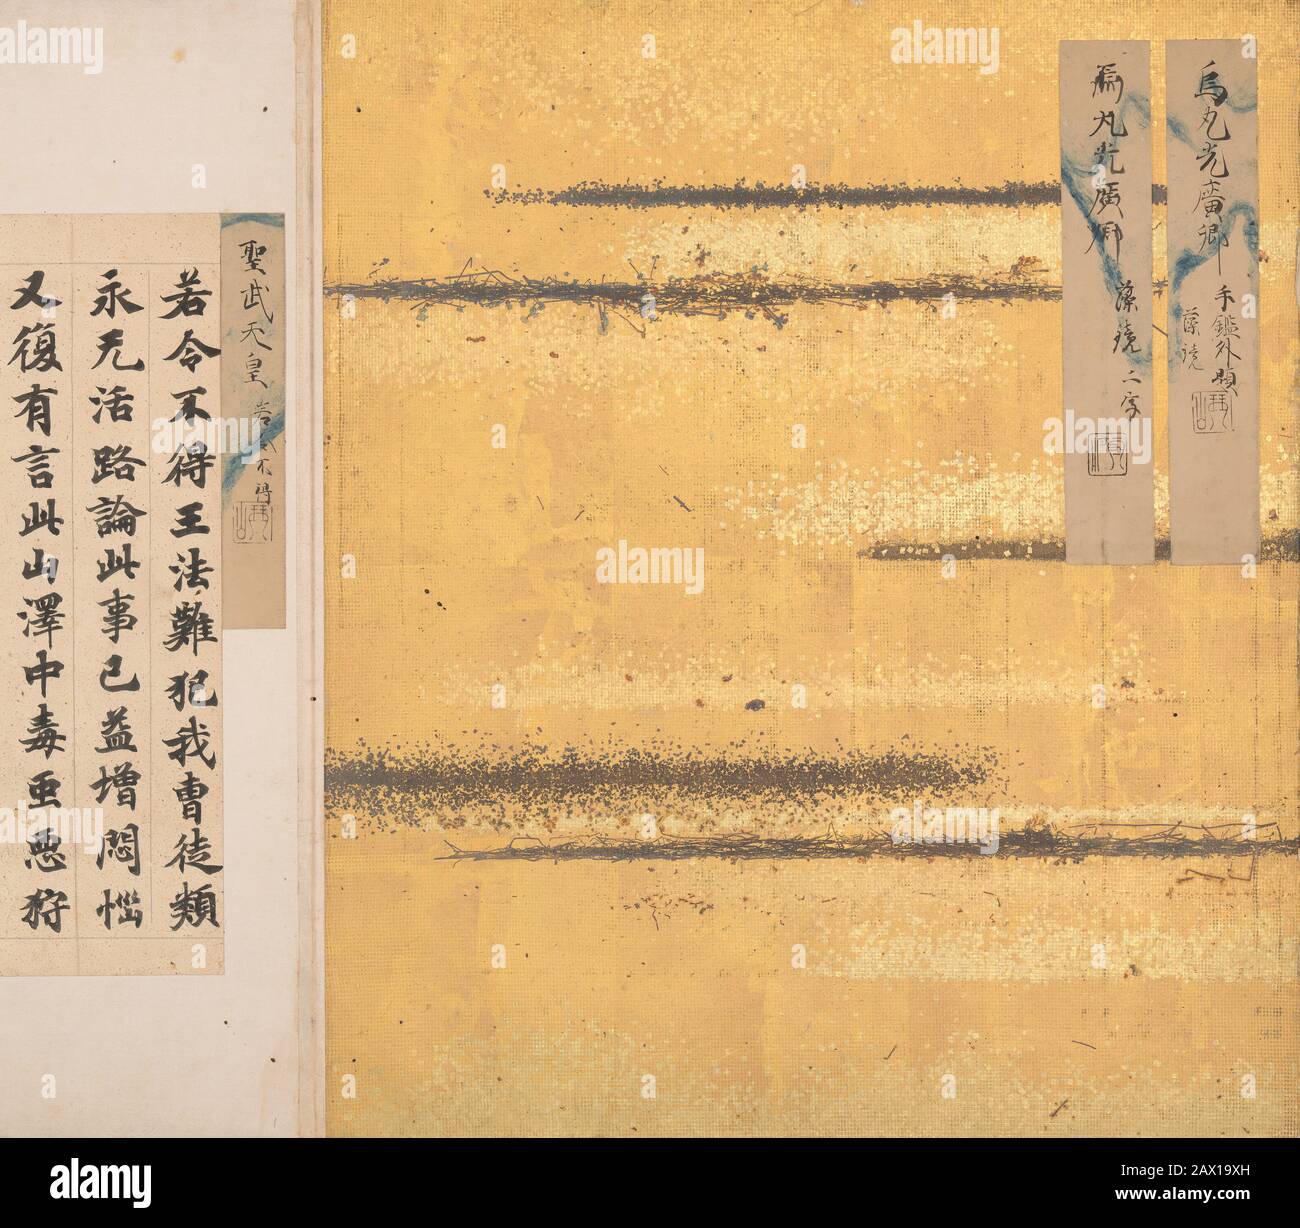 Un espejo De algas Recolectadas (Mokagami) Calligraphy Album , siglo VIII-17. Ejemplos de tekagami medieval del conocido poeta Fujiwara no Shunzei (1114-1204) y su hijo aún más famoso, Teika (1162-1241). Período Nara (710-794) Edo (1615-1868) Foto de stock